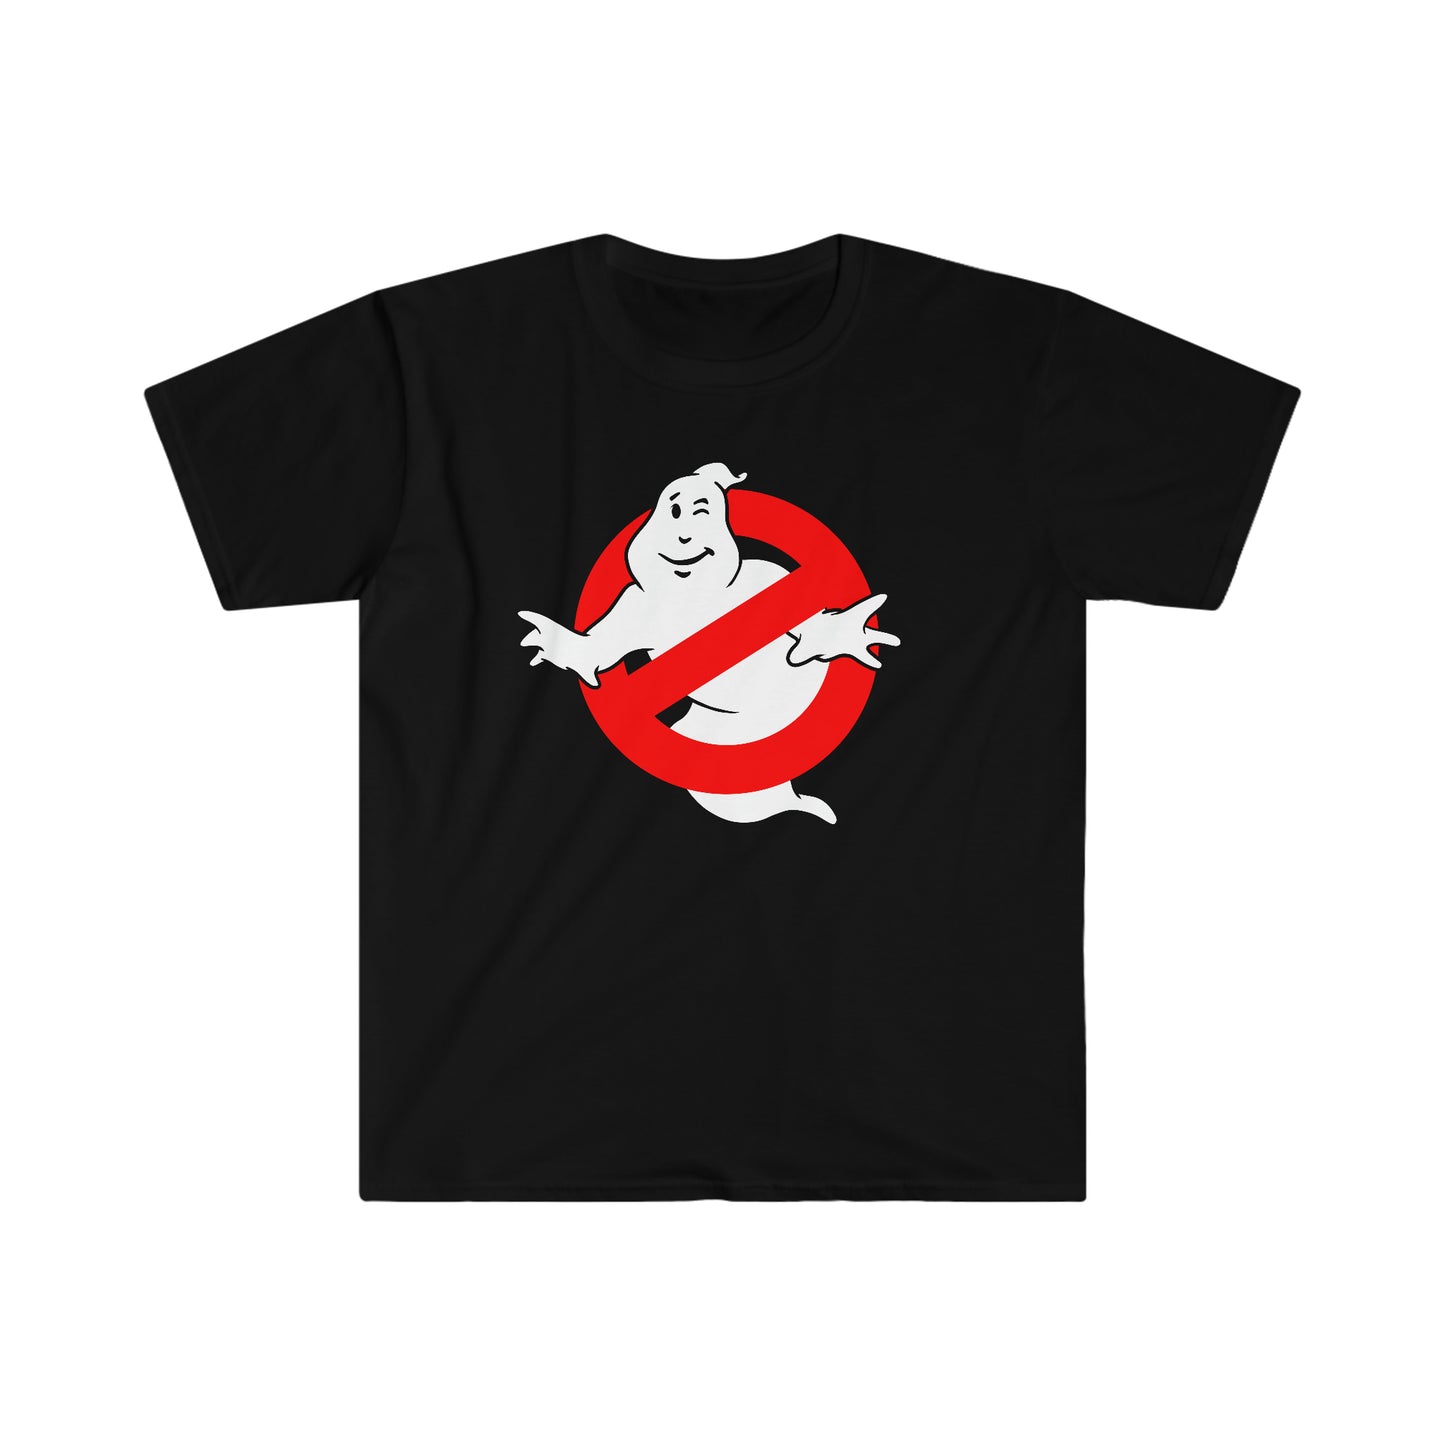 Ghostbutters t-shirt